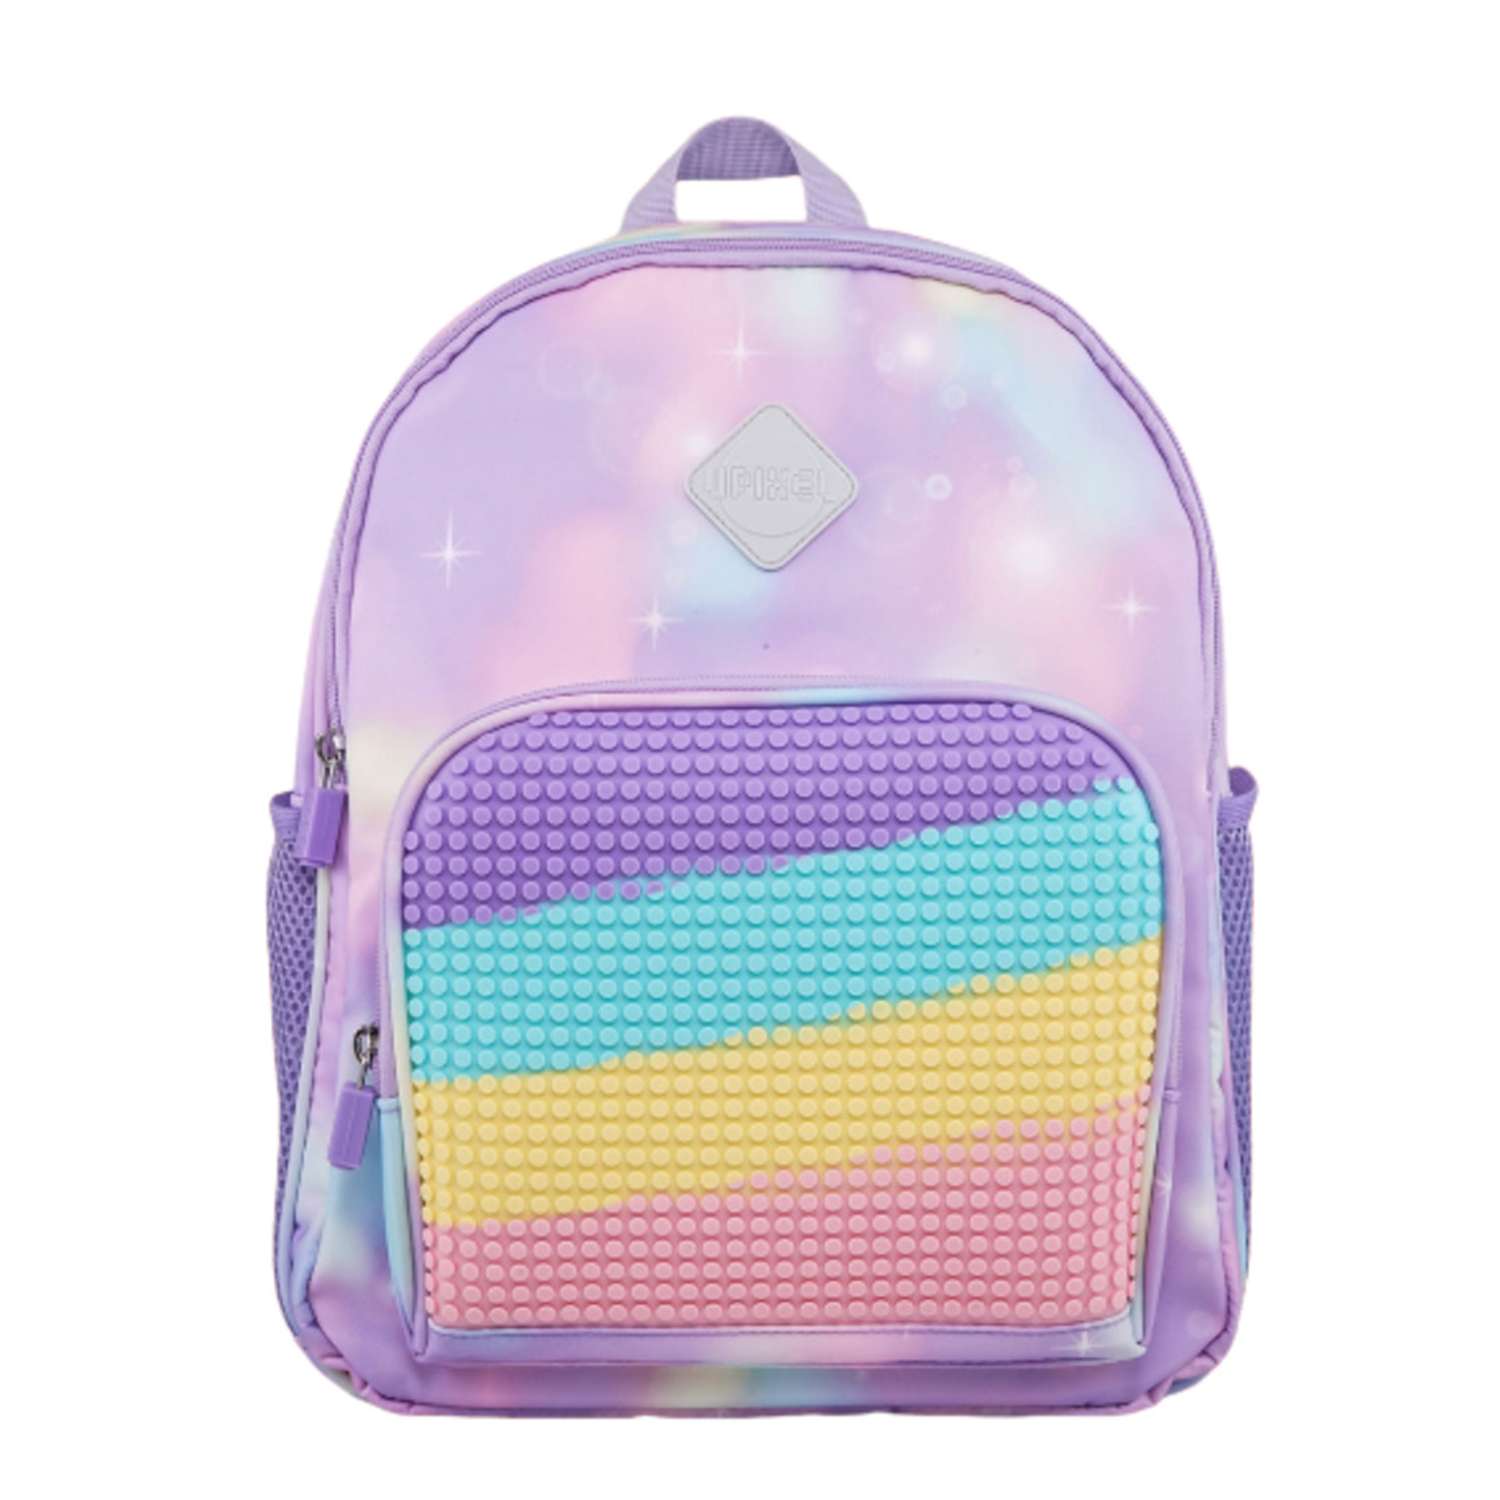 Рюкзак пиксельный Upixel rainbow Futuristic Kids School Bag U21-001 фиолетовый - фото 1